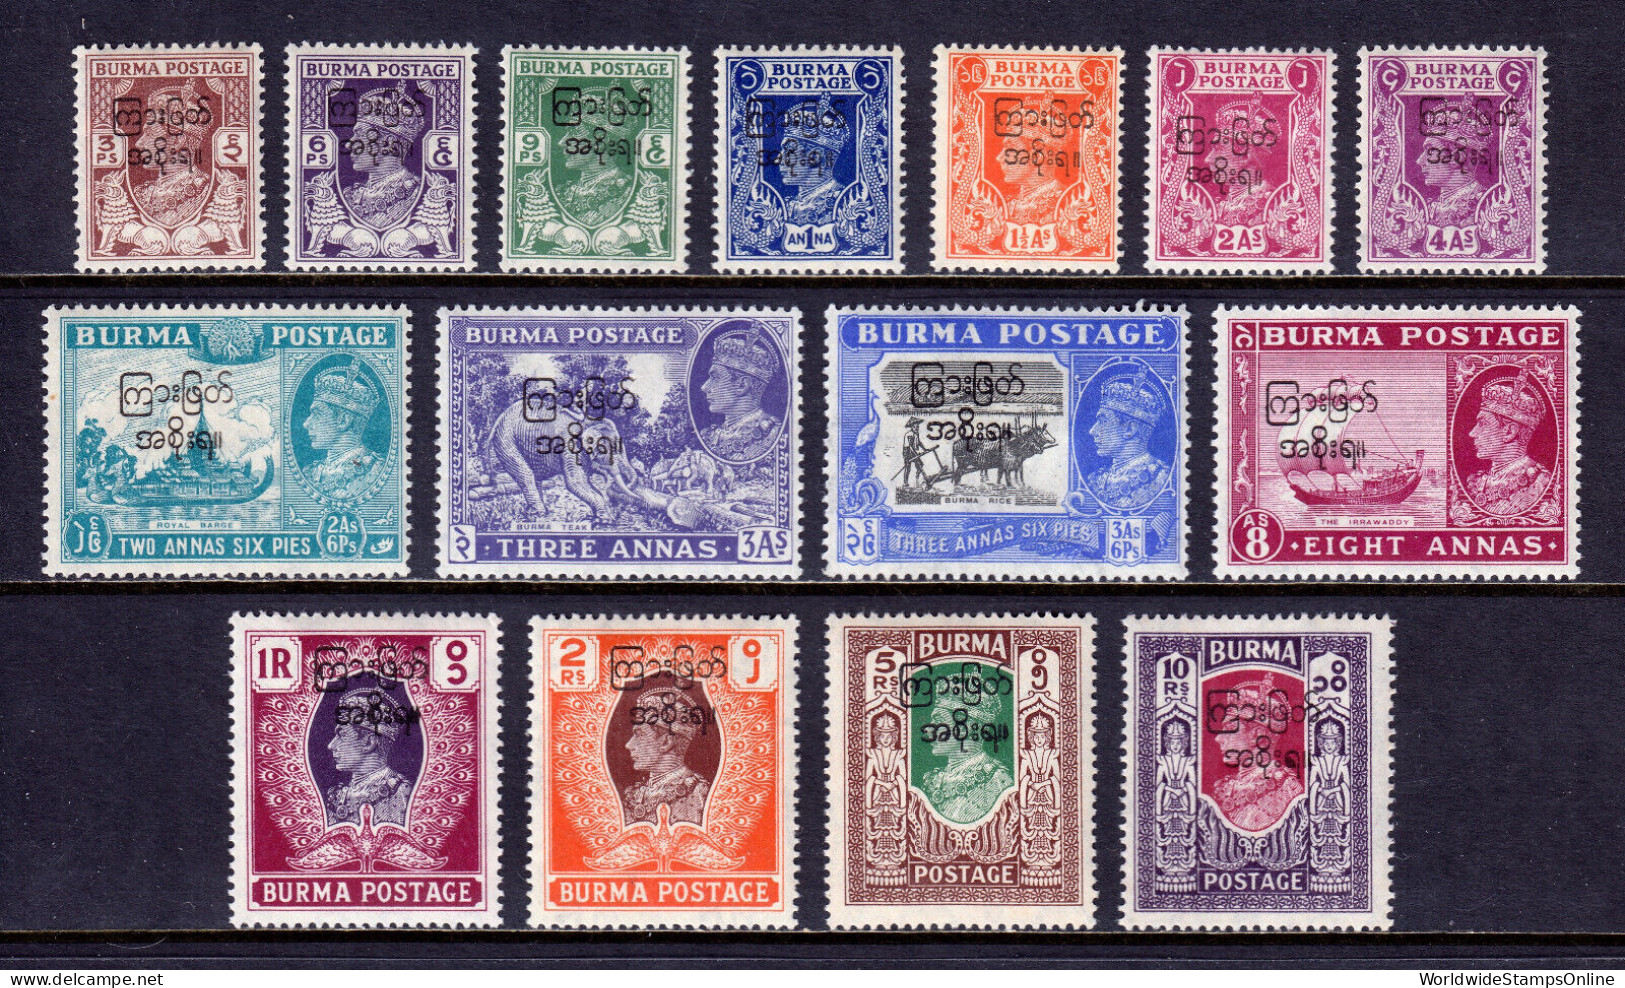 BURMA — SCOTT 70-84 — 1947 KGVI INTERIM GOVERNMENT OVPT. SET — MH — SCV $49 - Burma (...-1947)